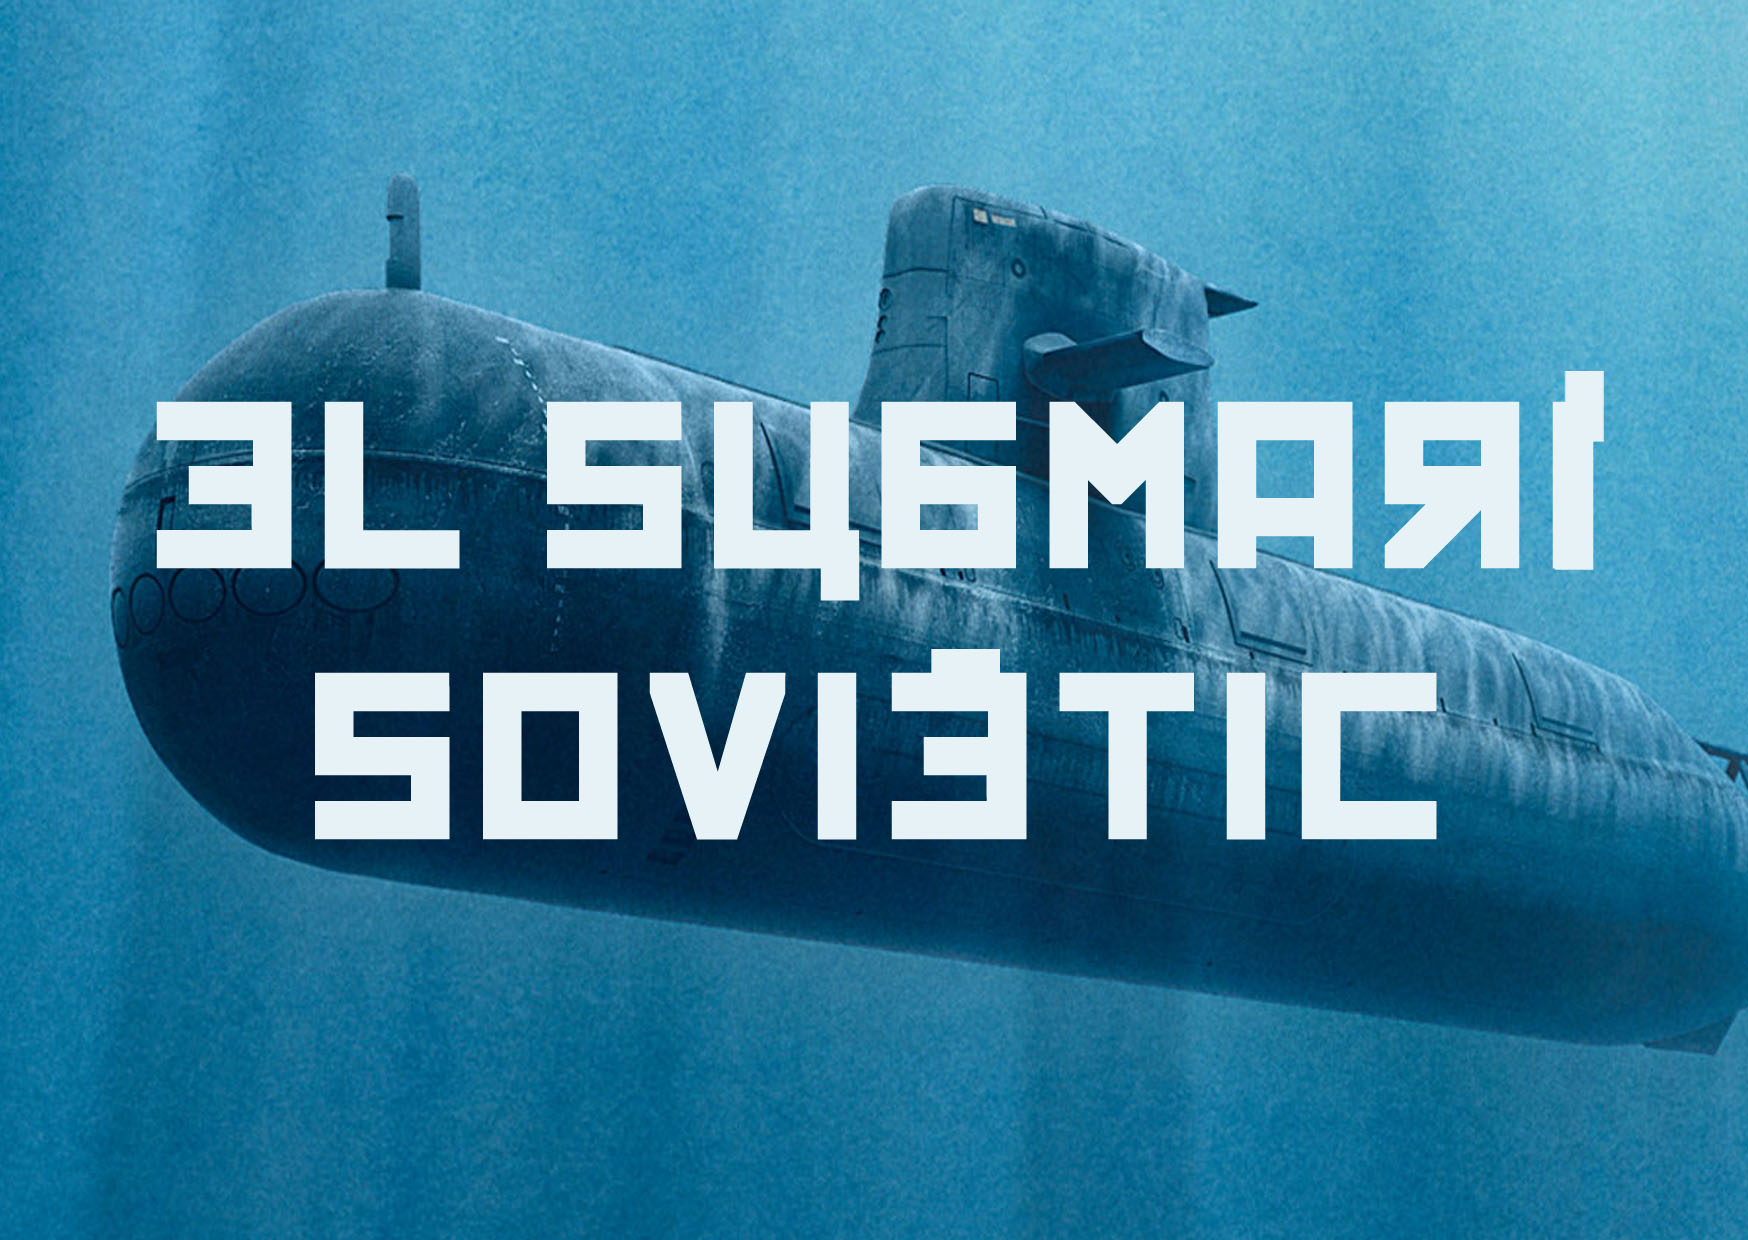 Logo "El submarí soviètic" esacpe room